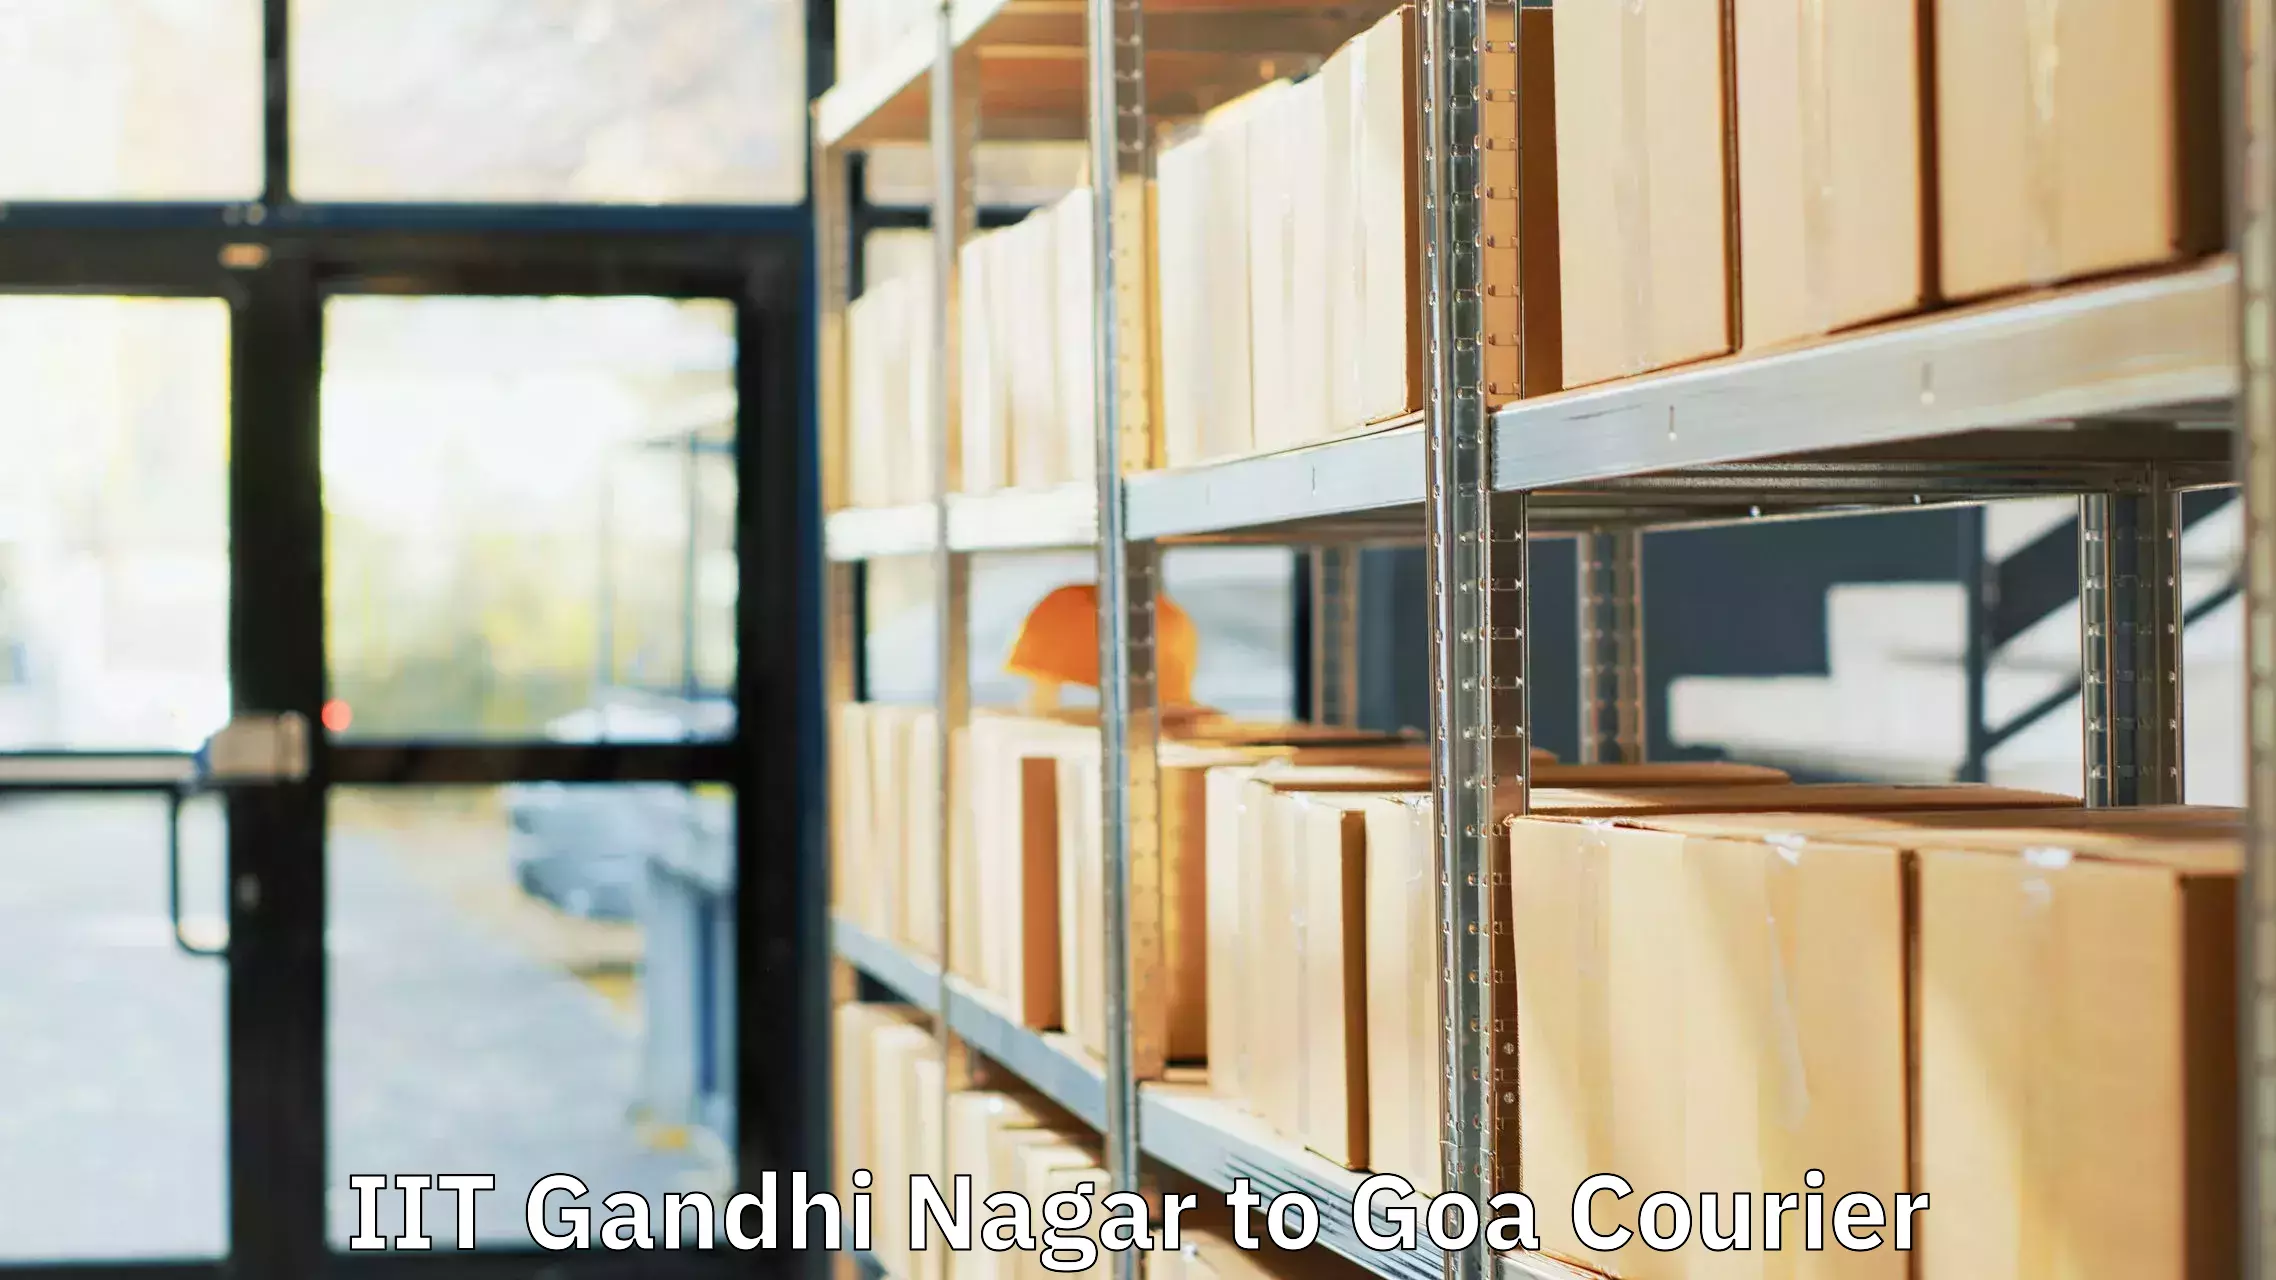 Express baggage shipping IIT Gandhi Nagar to Goa University